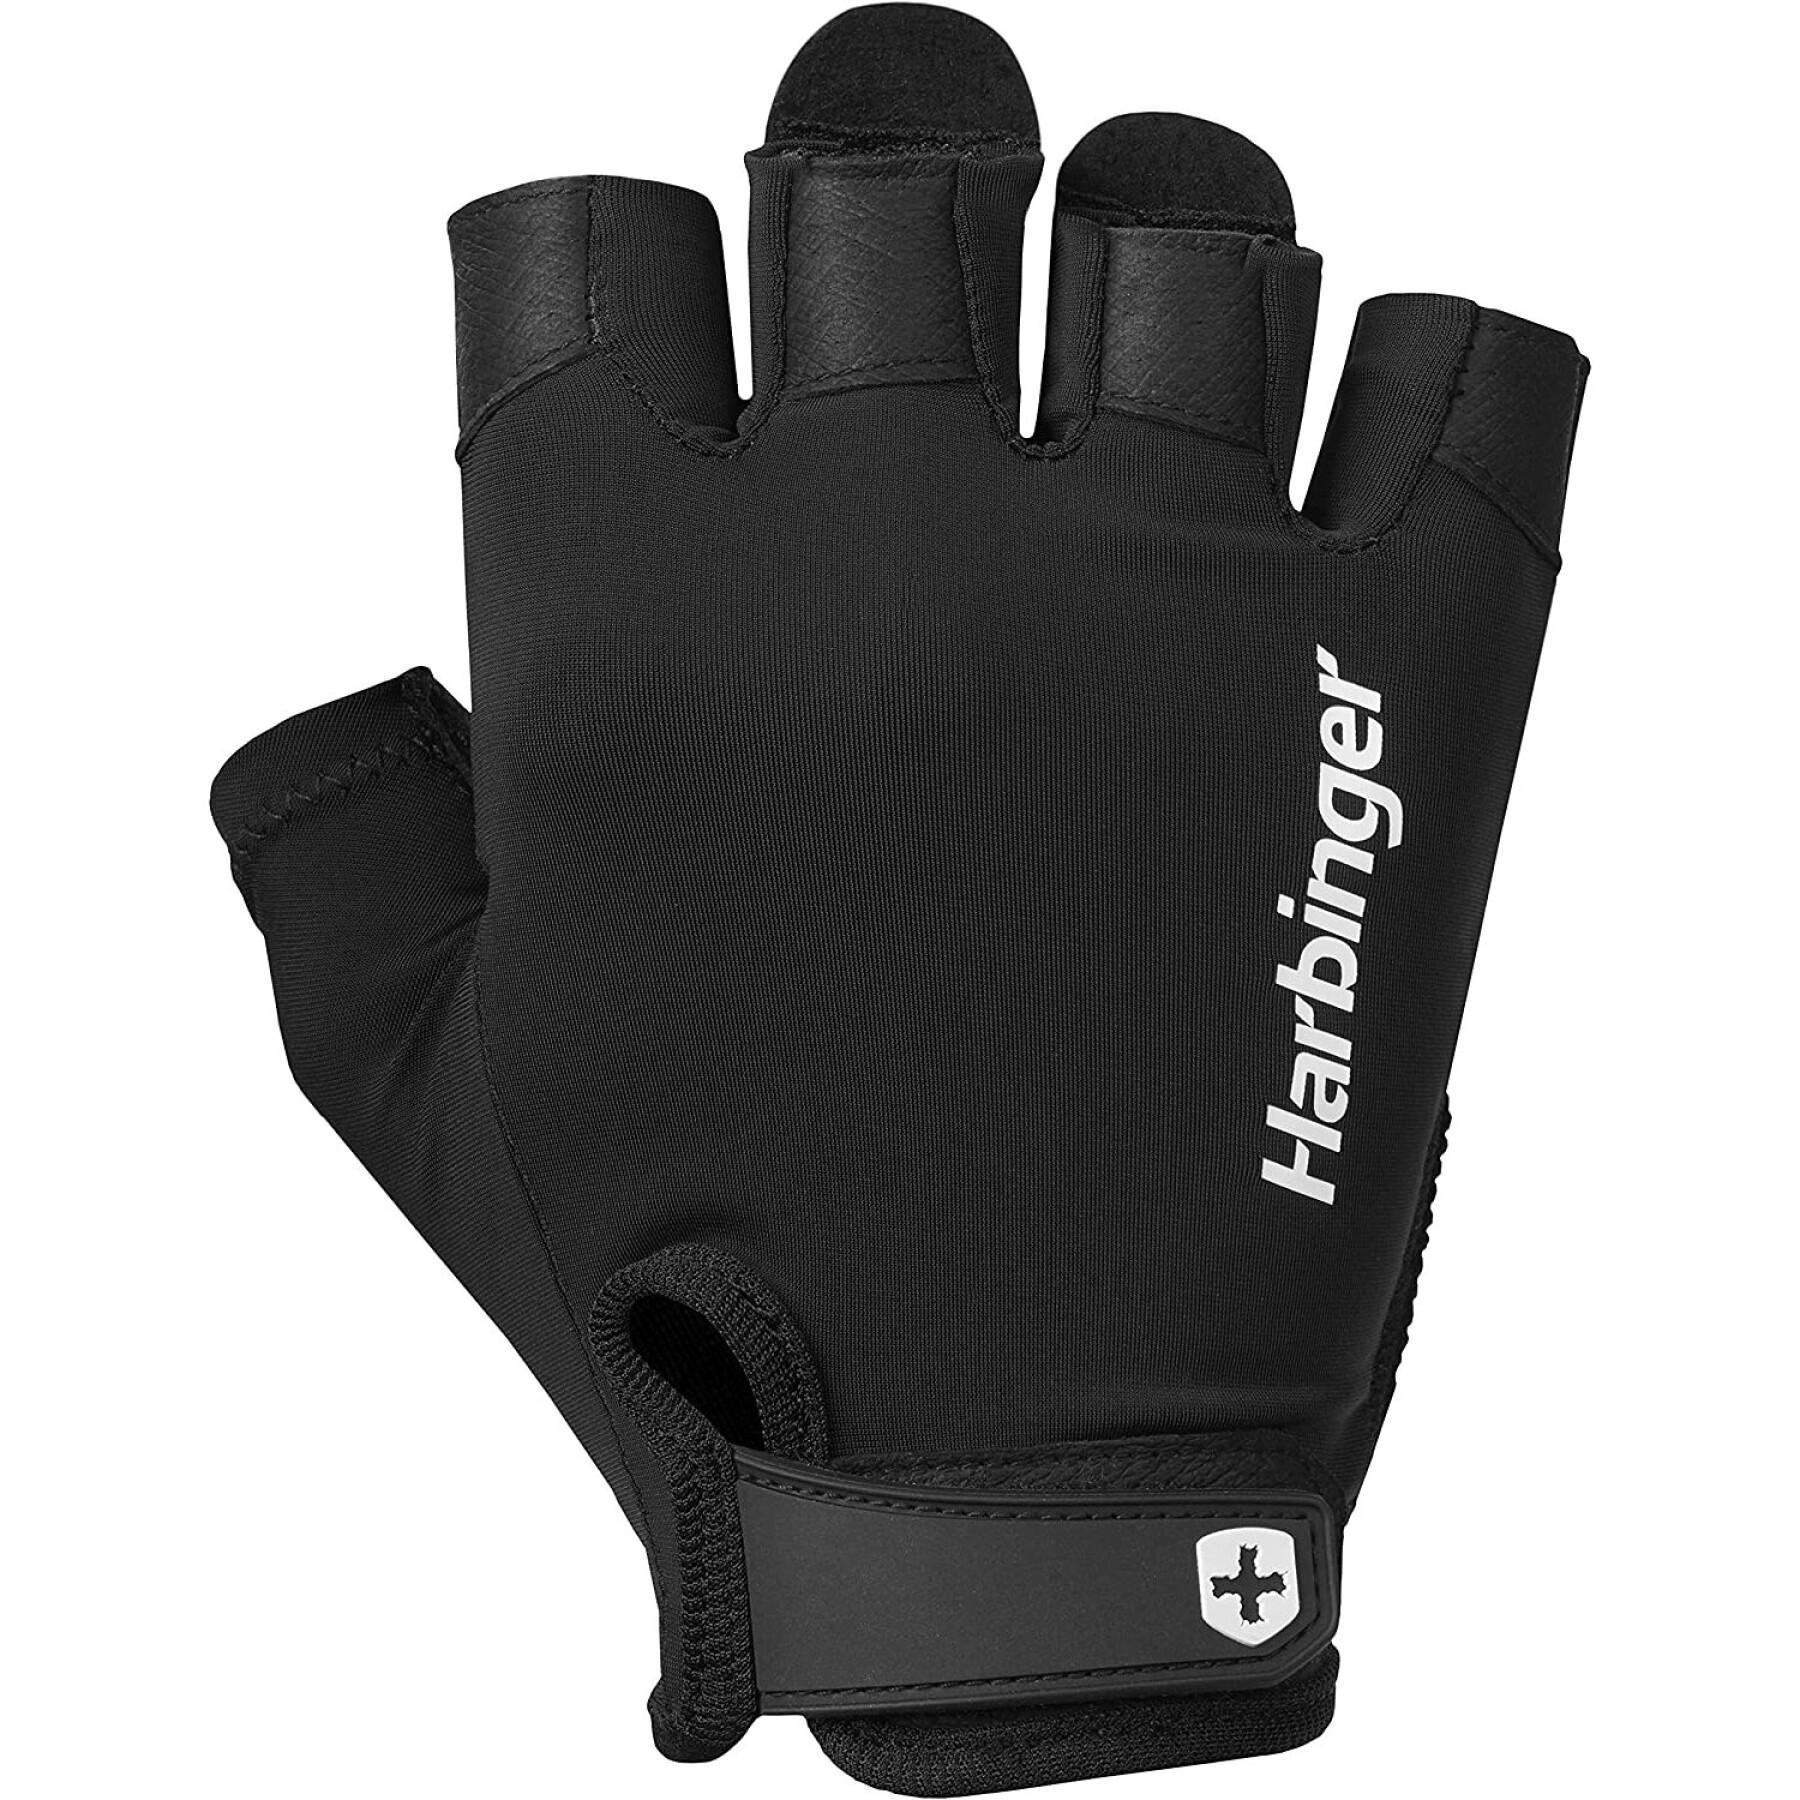 Gloves from Fitness Harbinger Pro 2.0